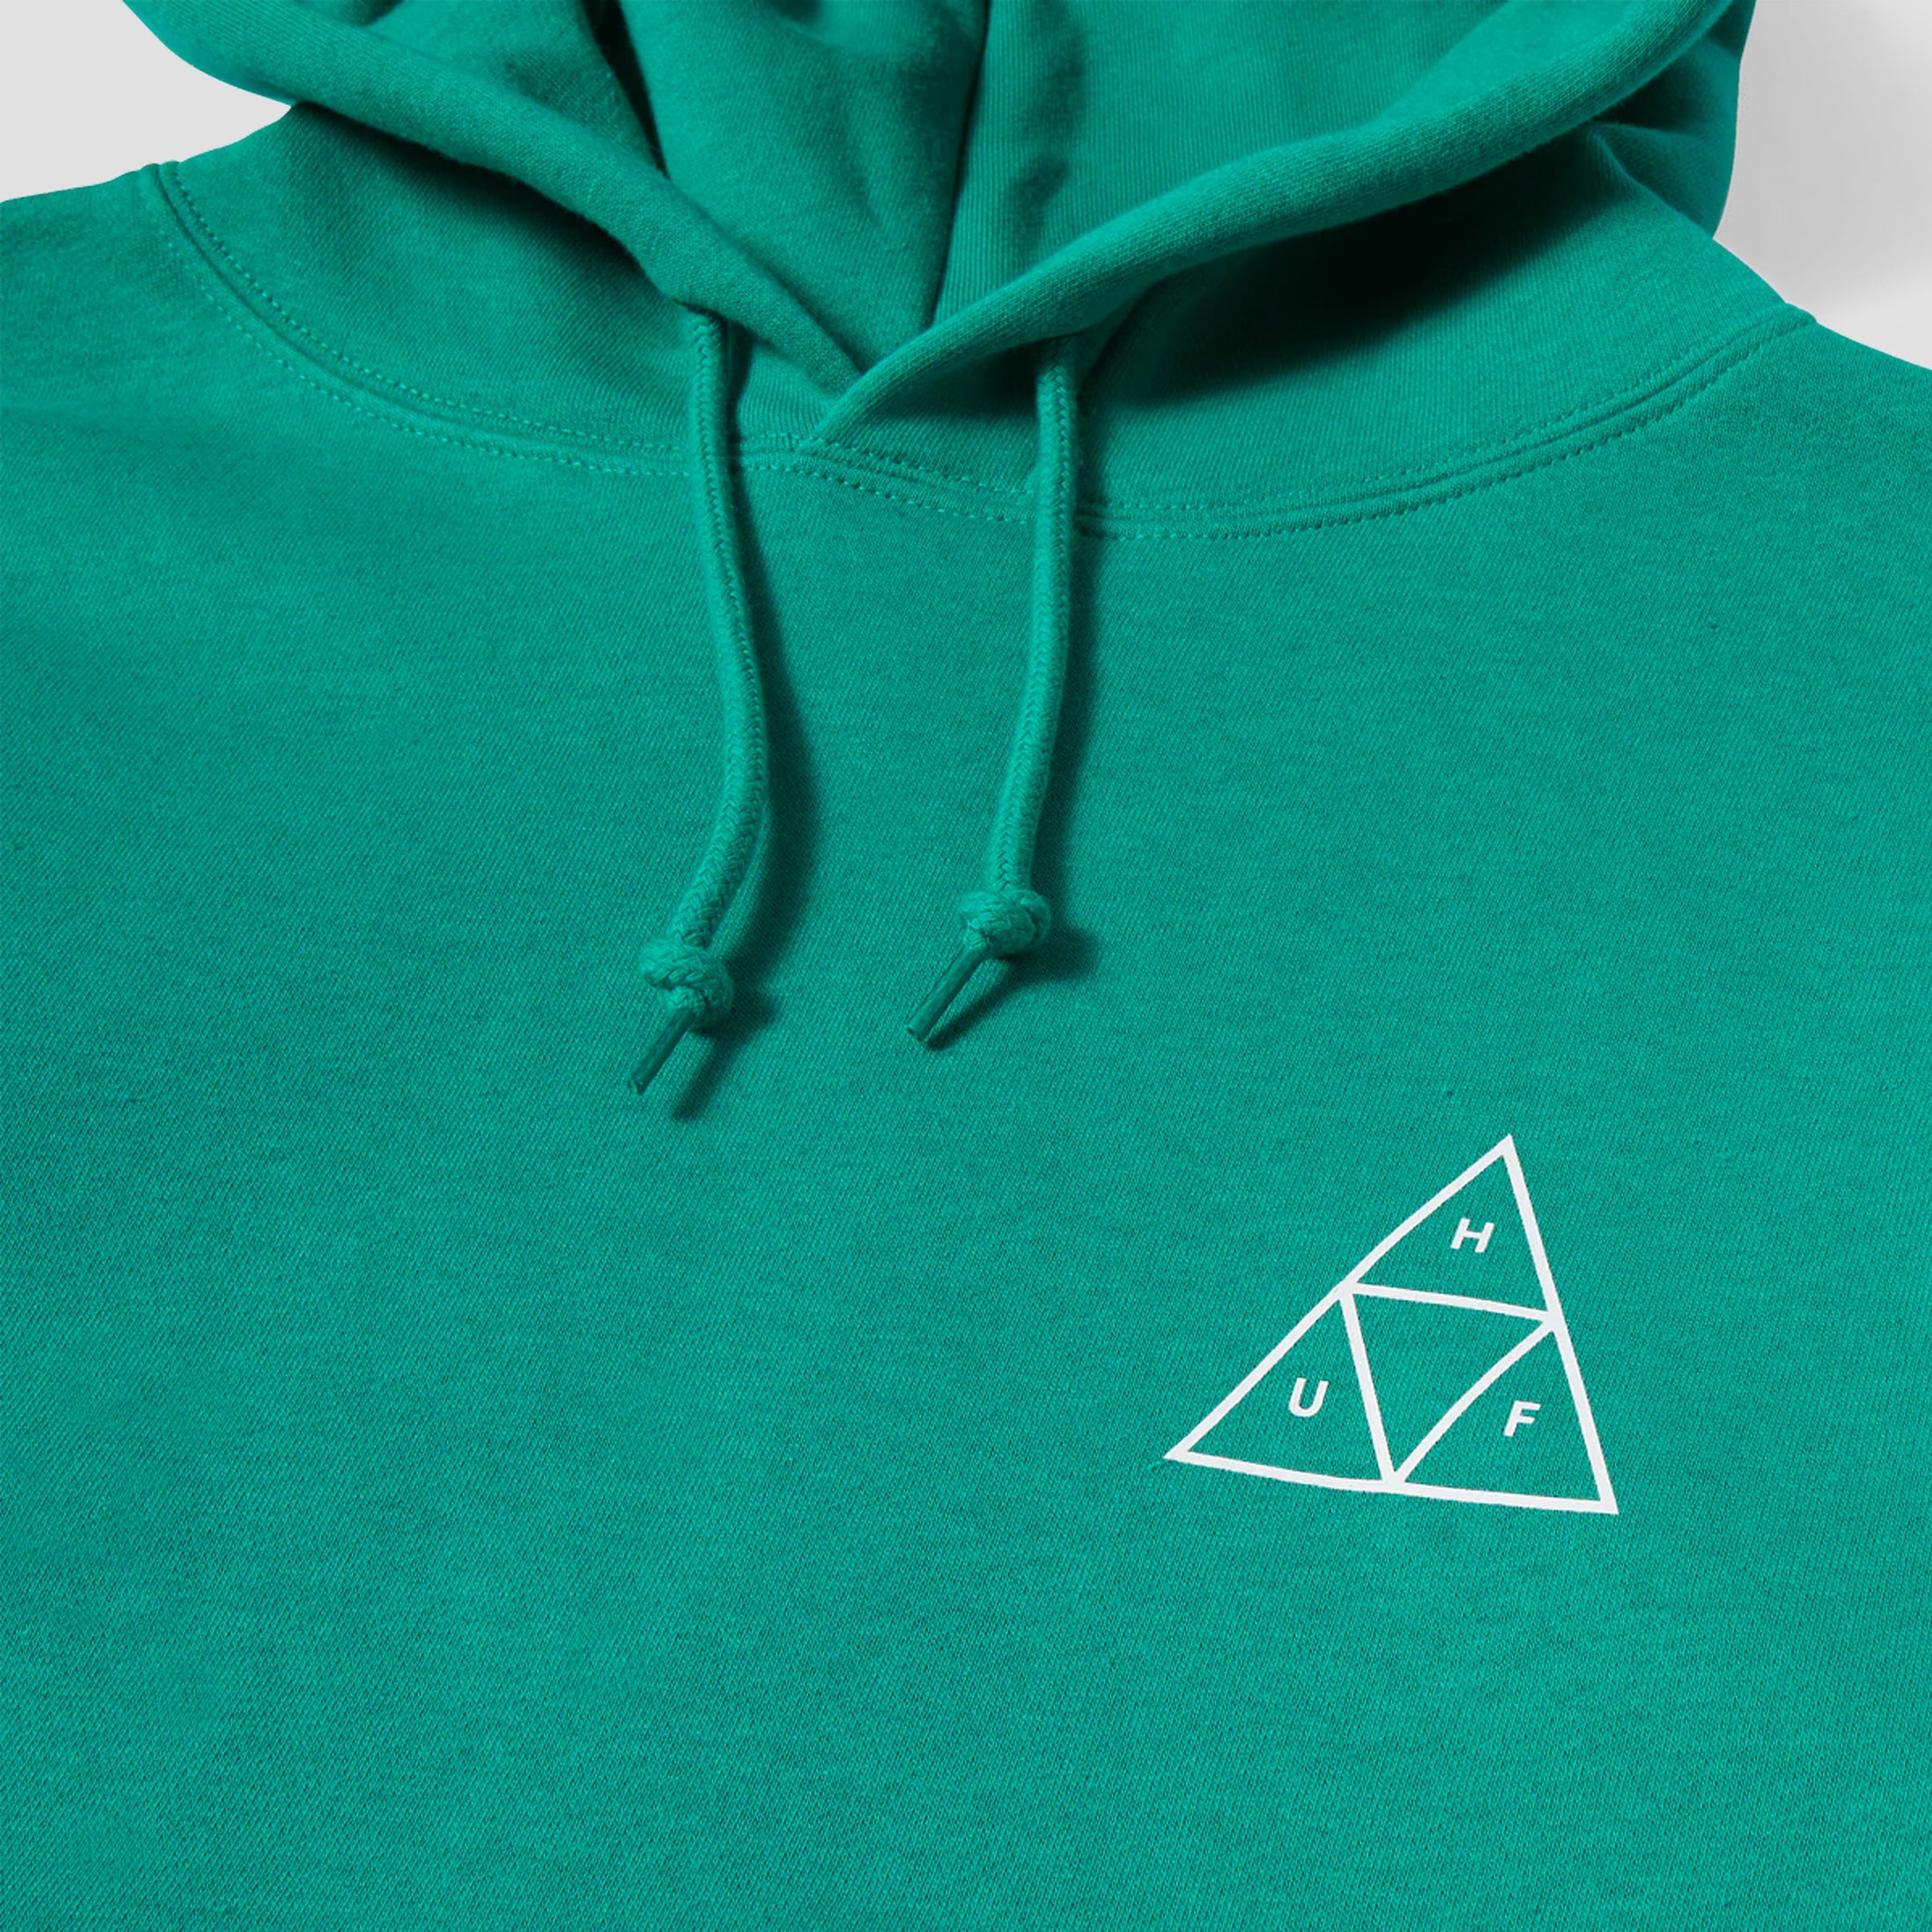 Huf Set Triple Triangle Hood Emerald